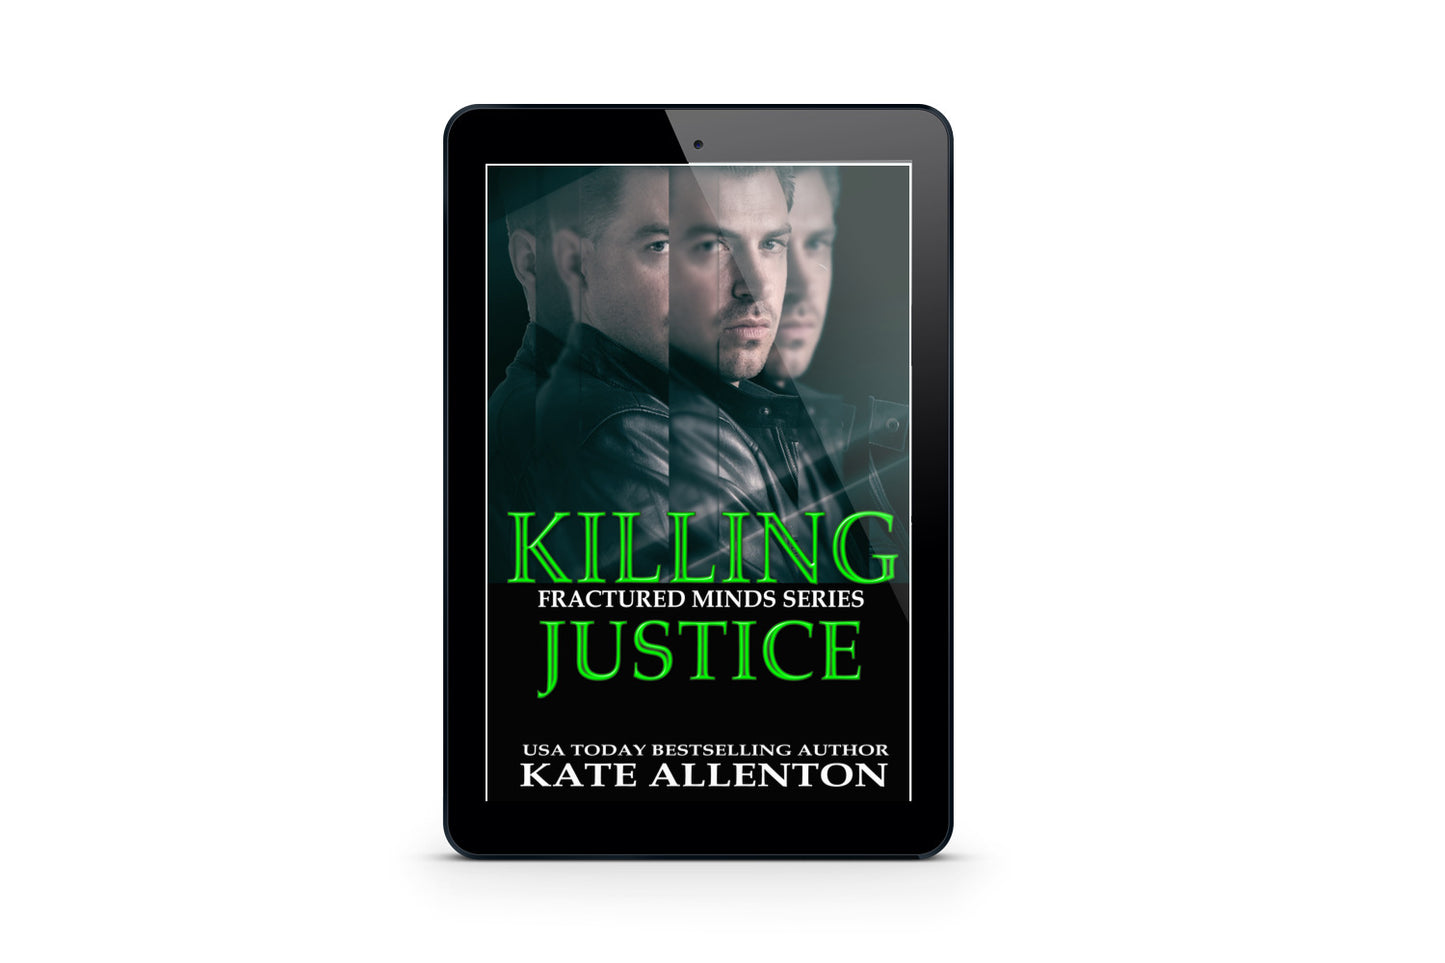 Killing Justice BOOK 2 (Kindle & Epub)